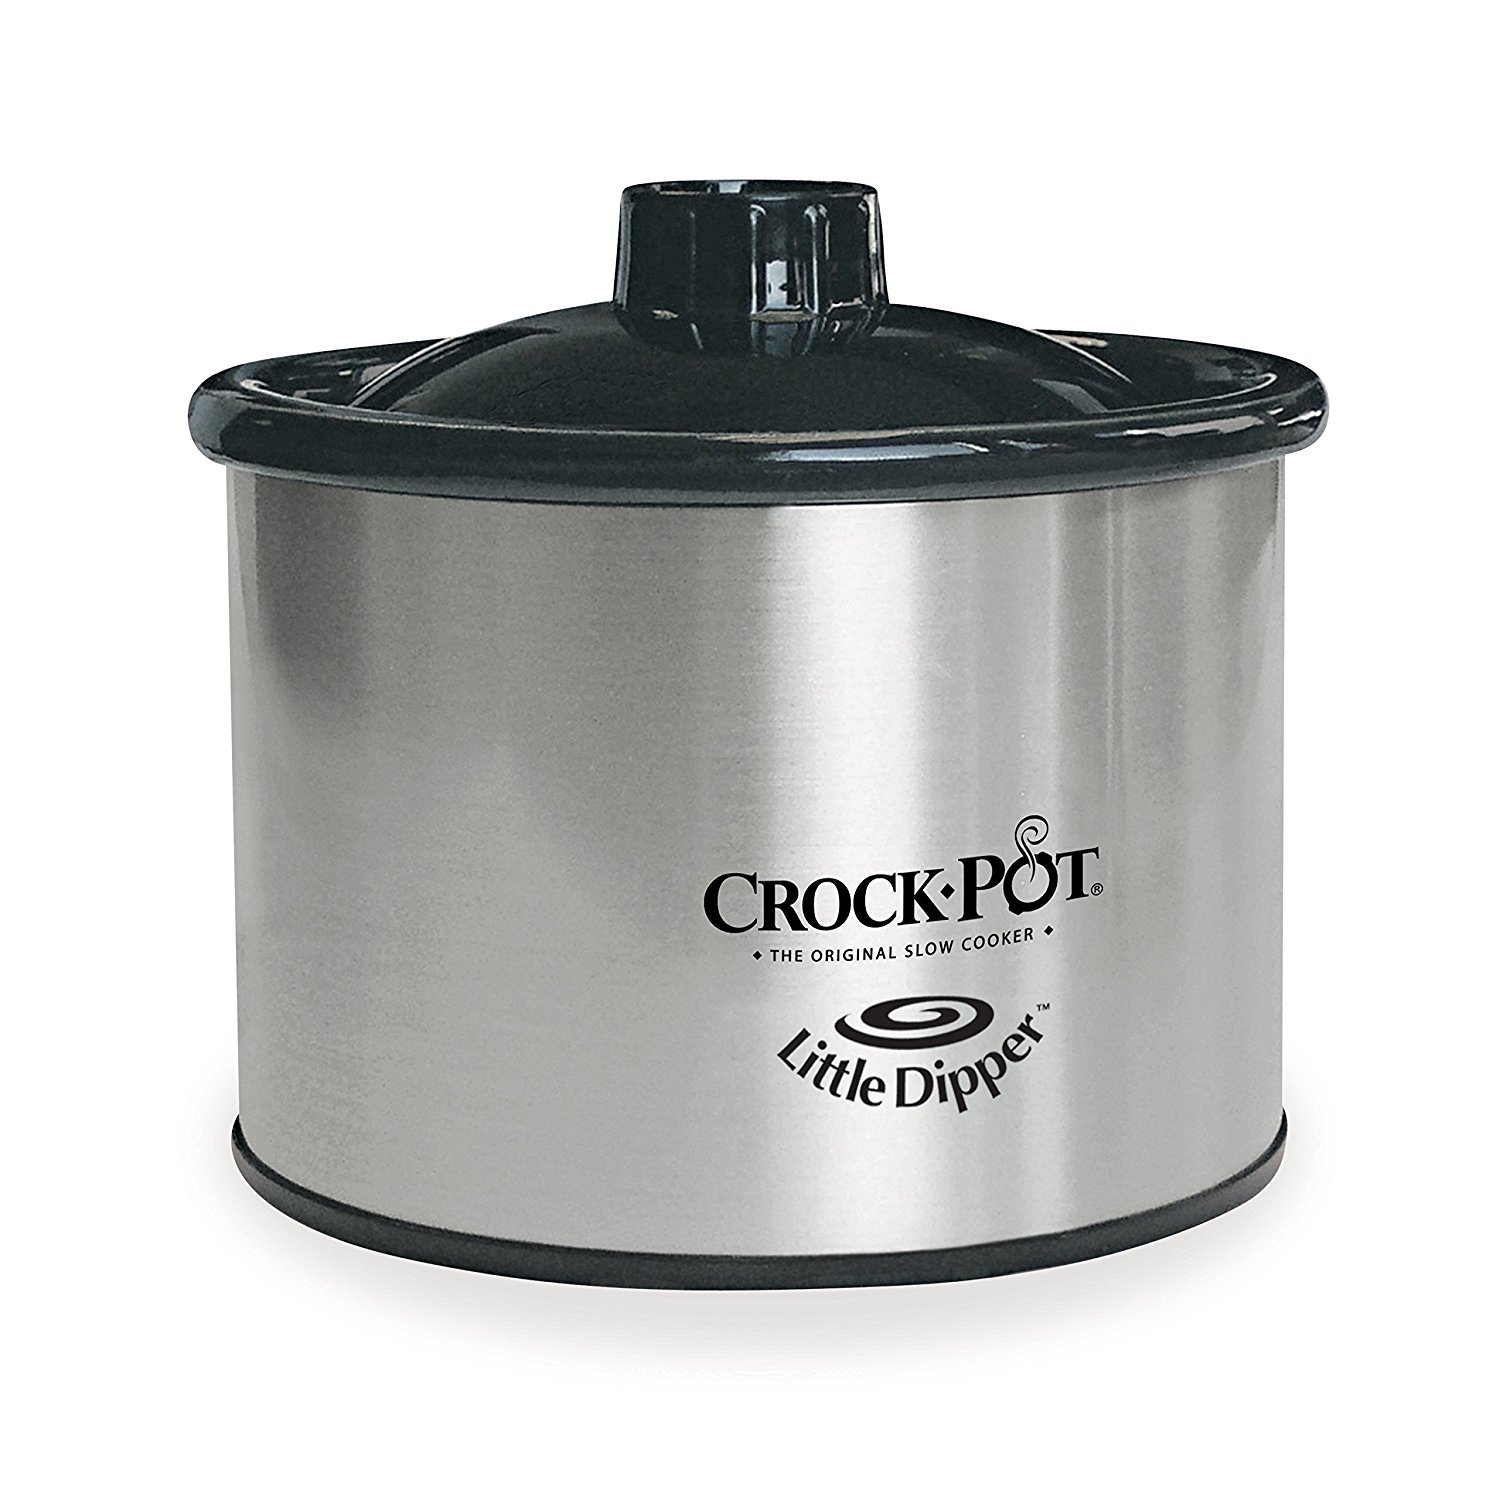 Crock-Pot 16oz Little Dipper Crock Pot Only $8.39!